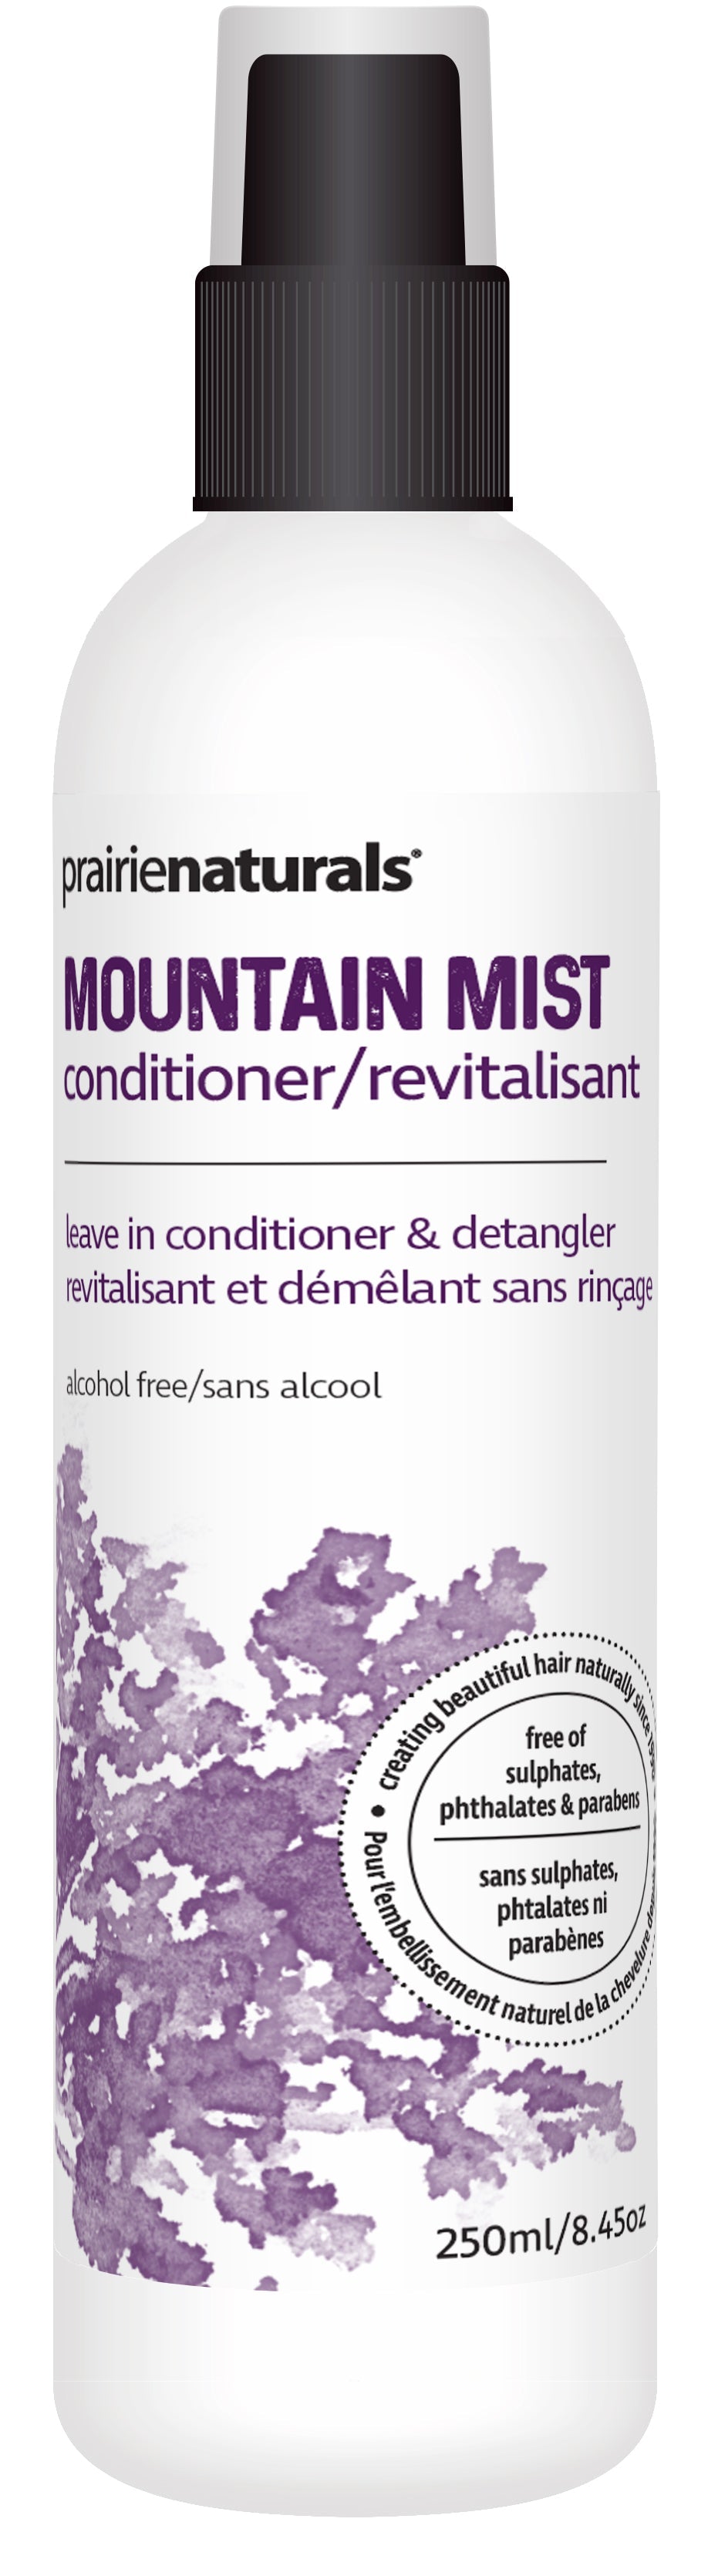 Mountain mist (traitement revitalisant vaporisateur) 250ml